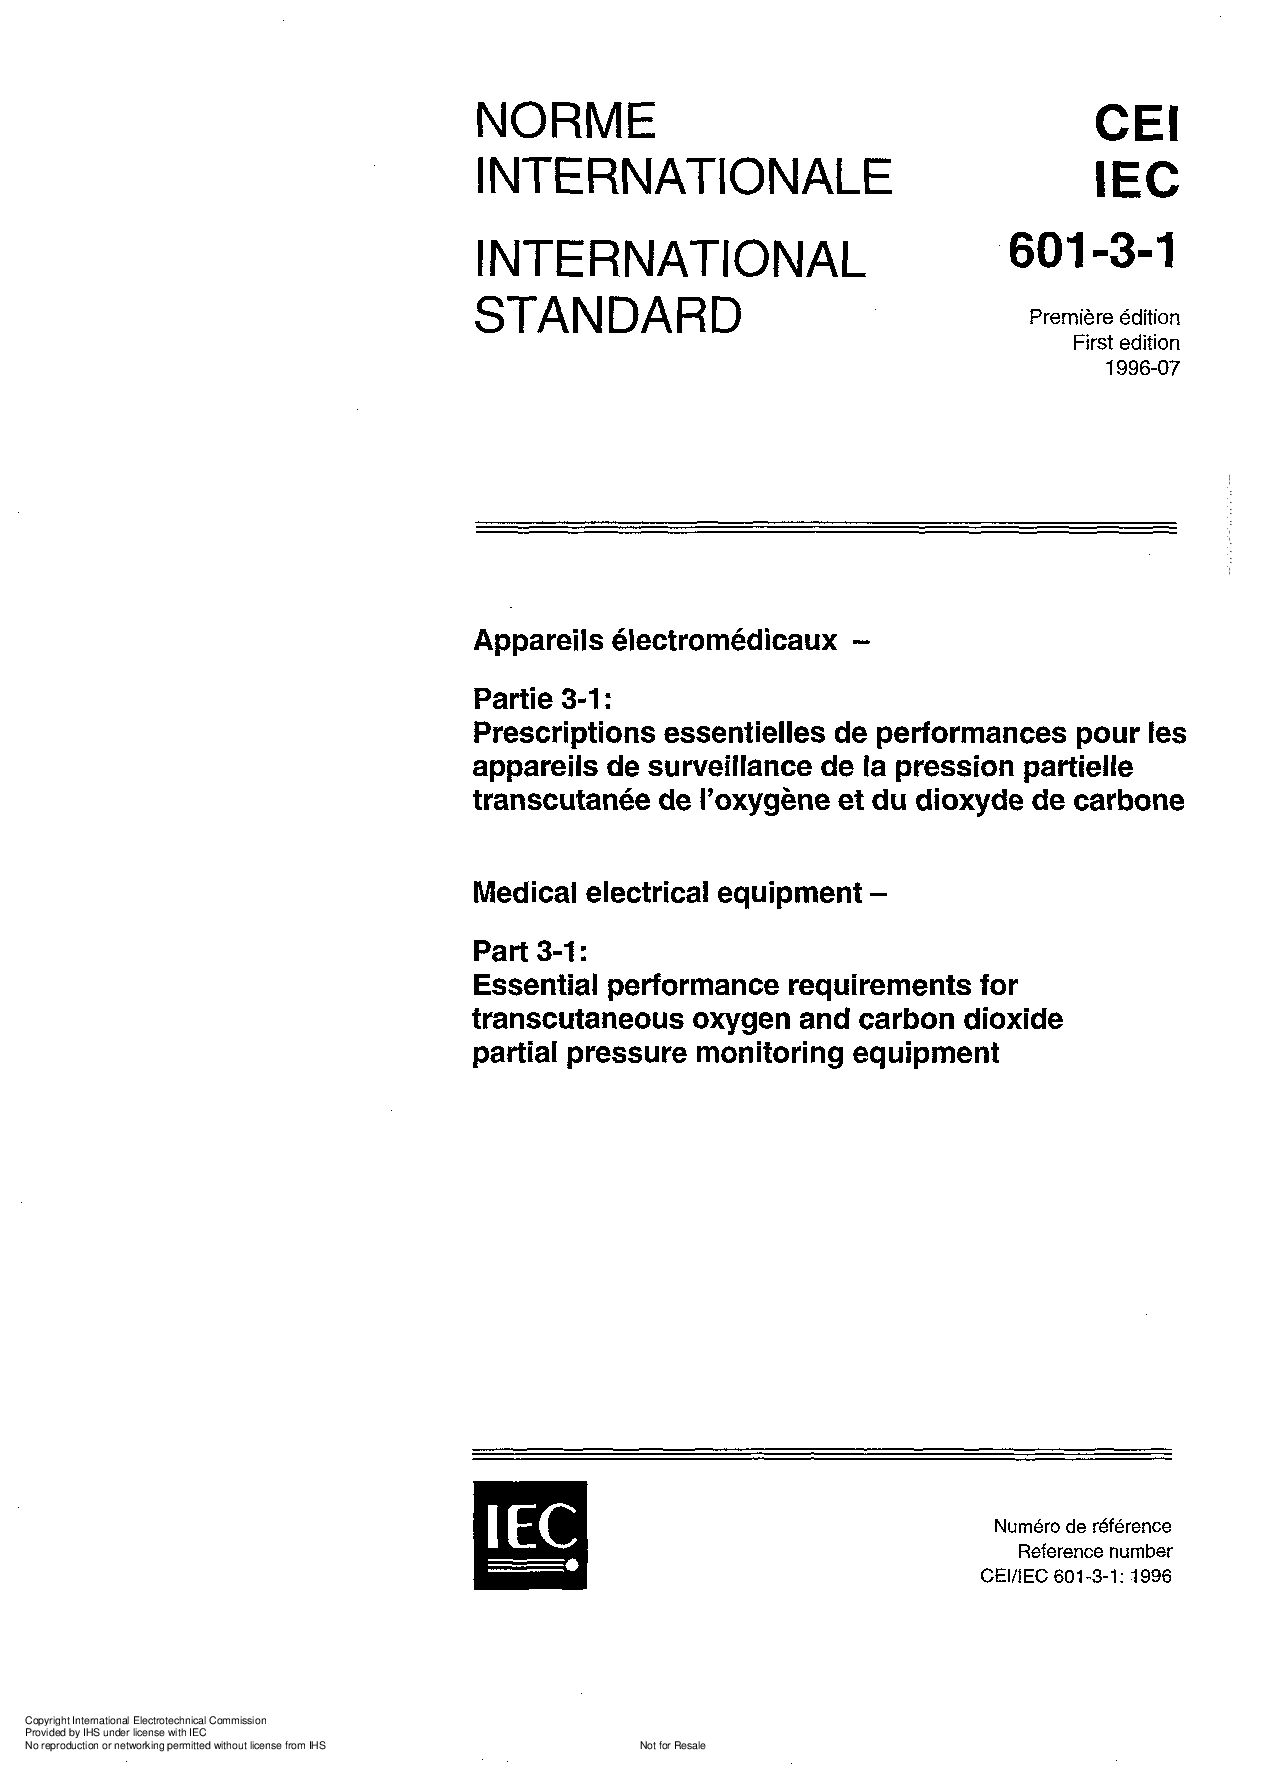 IEC 60601-3-1:1996